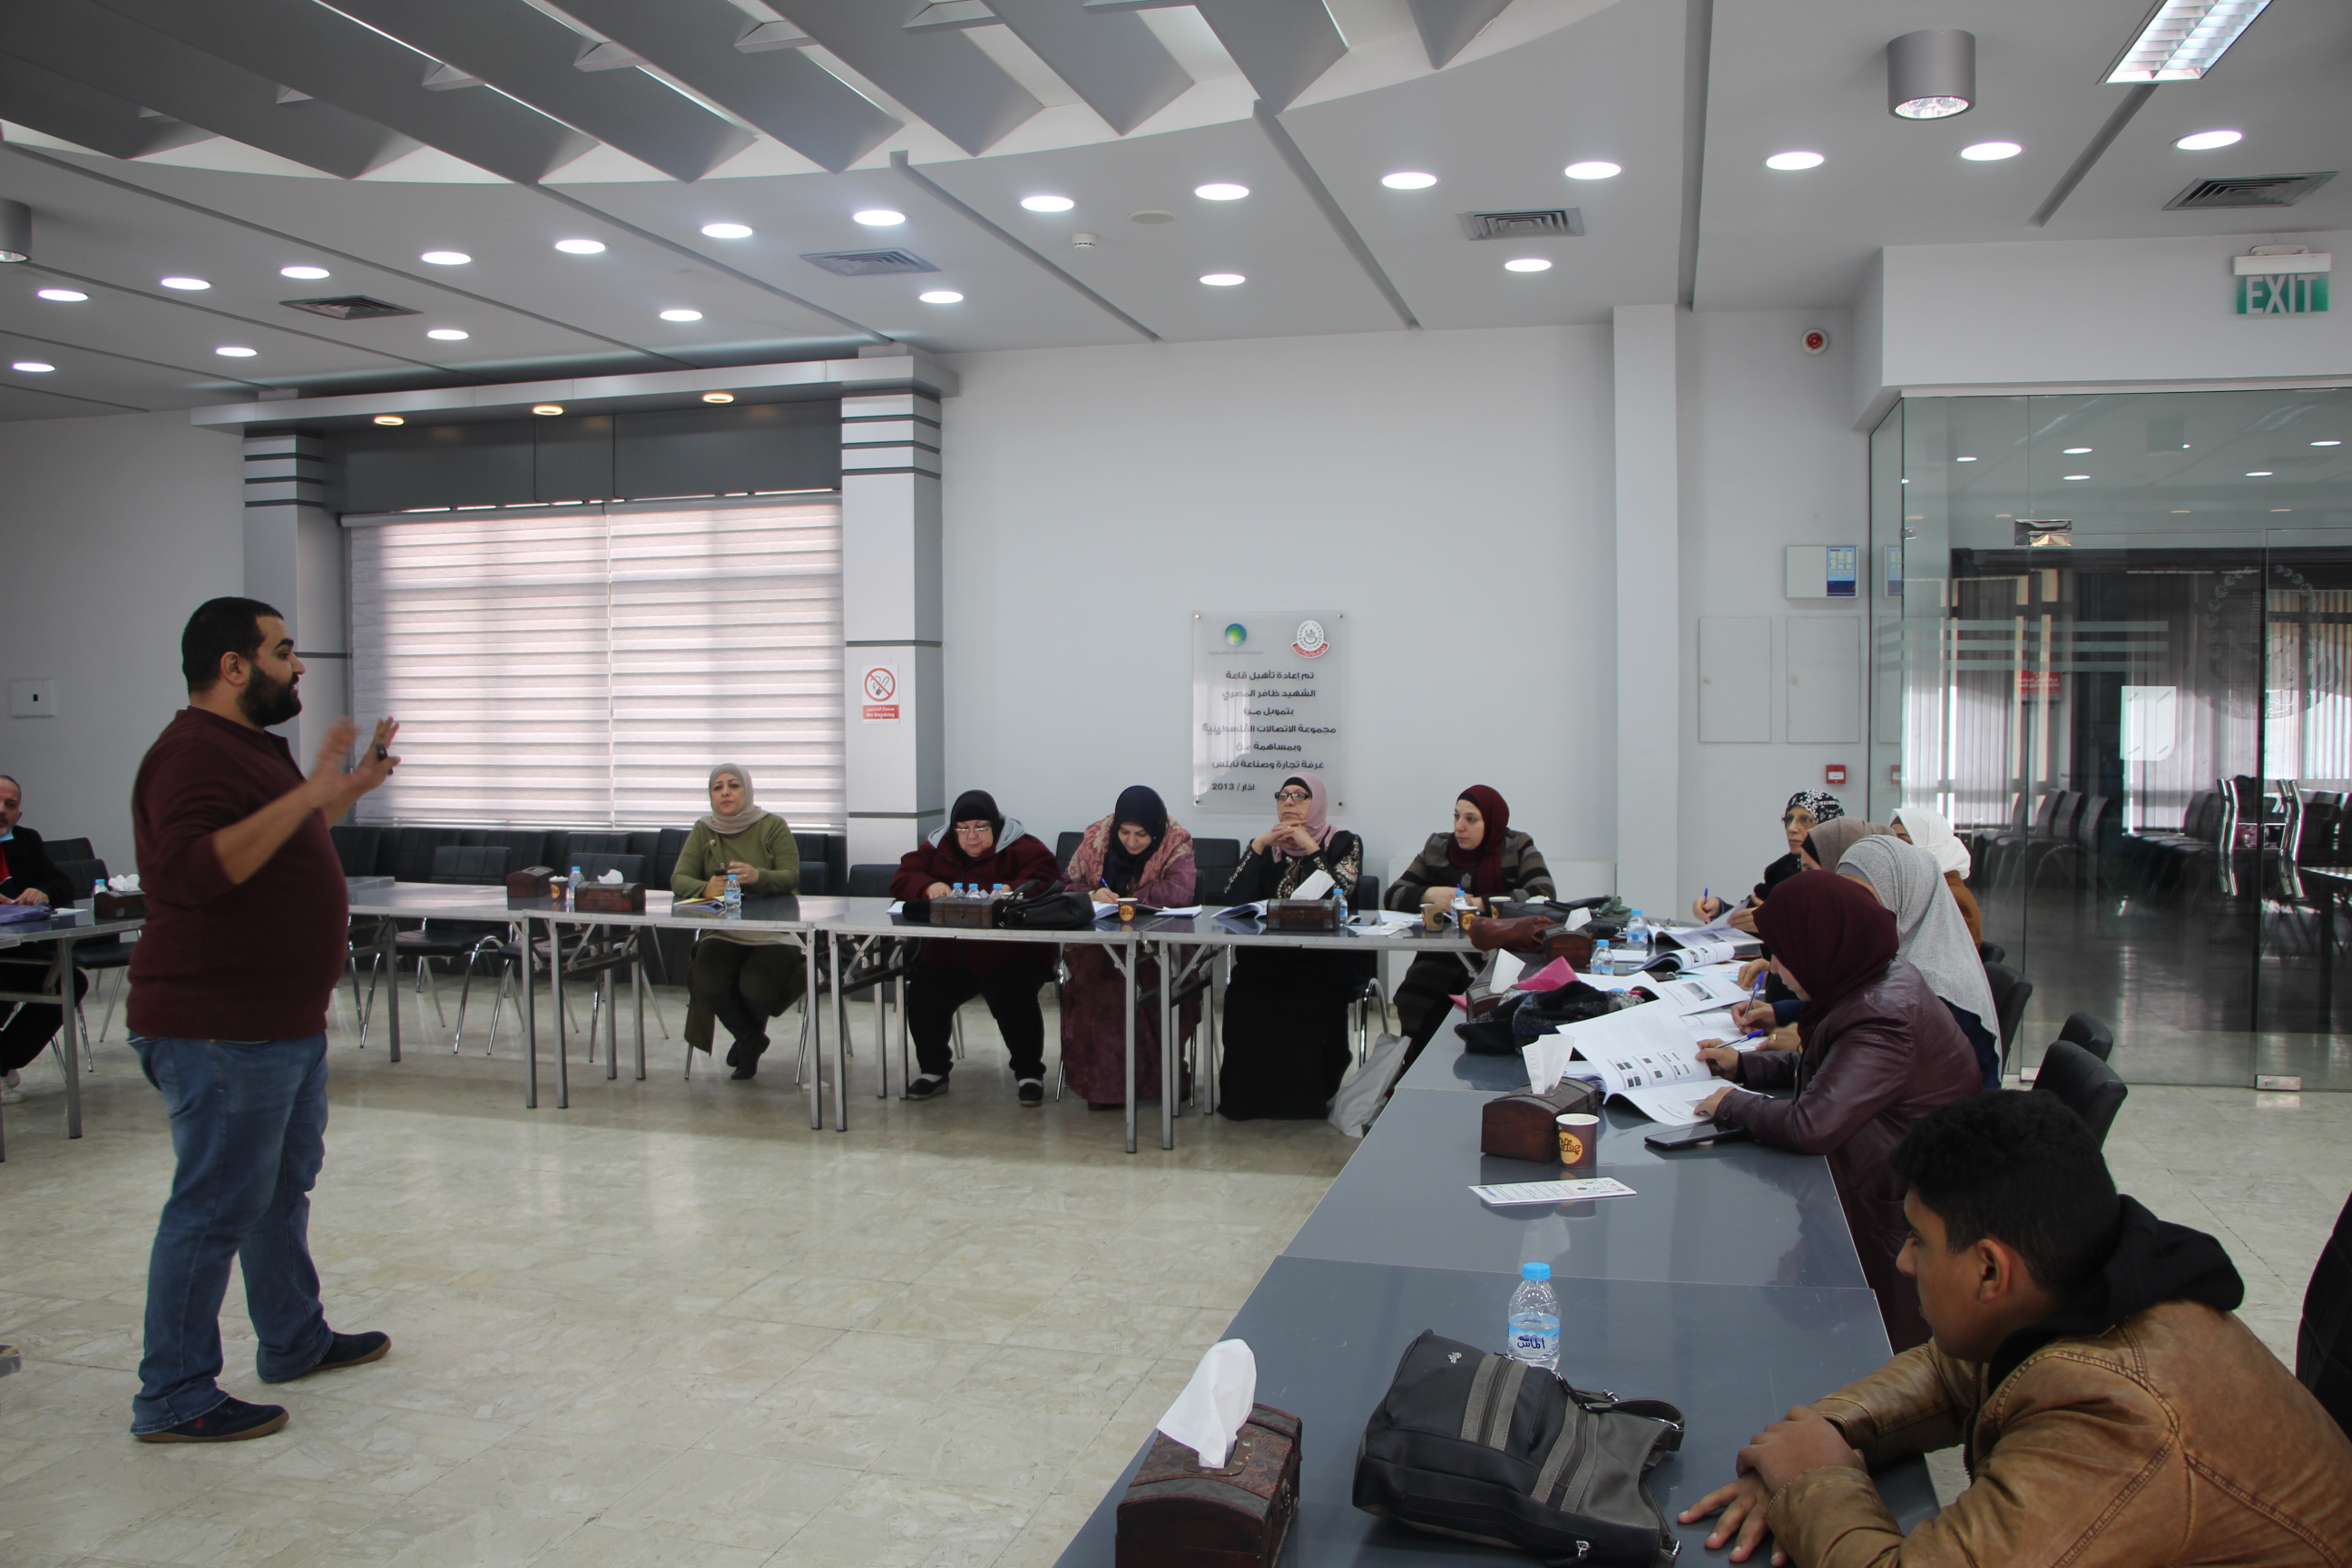 غرفة تجارة نابلس تنظم ورشة تدريبية حول السلامة الغذائية بالتعاون مع مشروع منشأتي واتحاد الصناعات الغذائية والزراعية الفلسطينية12-12-2021